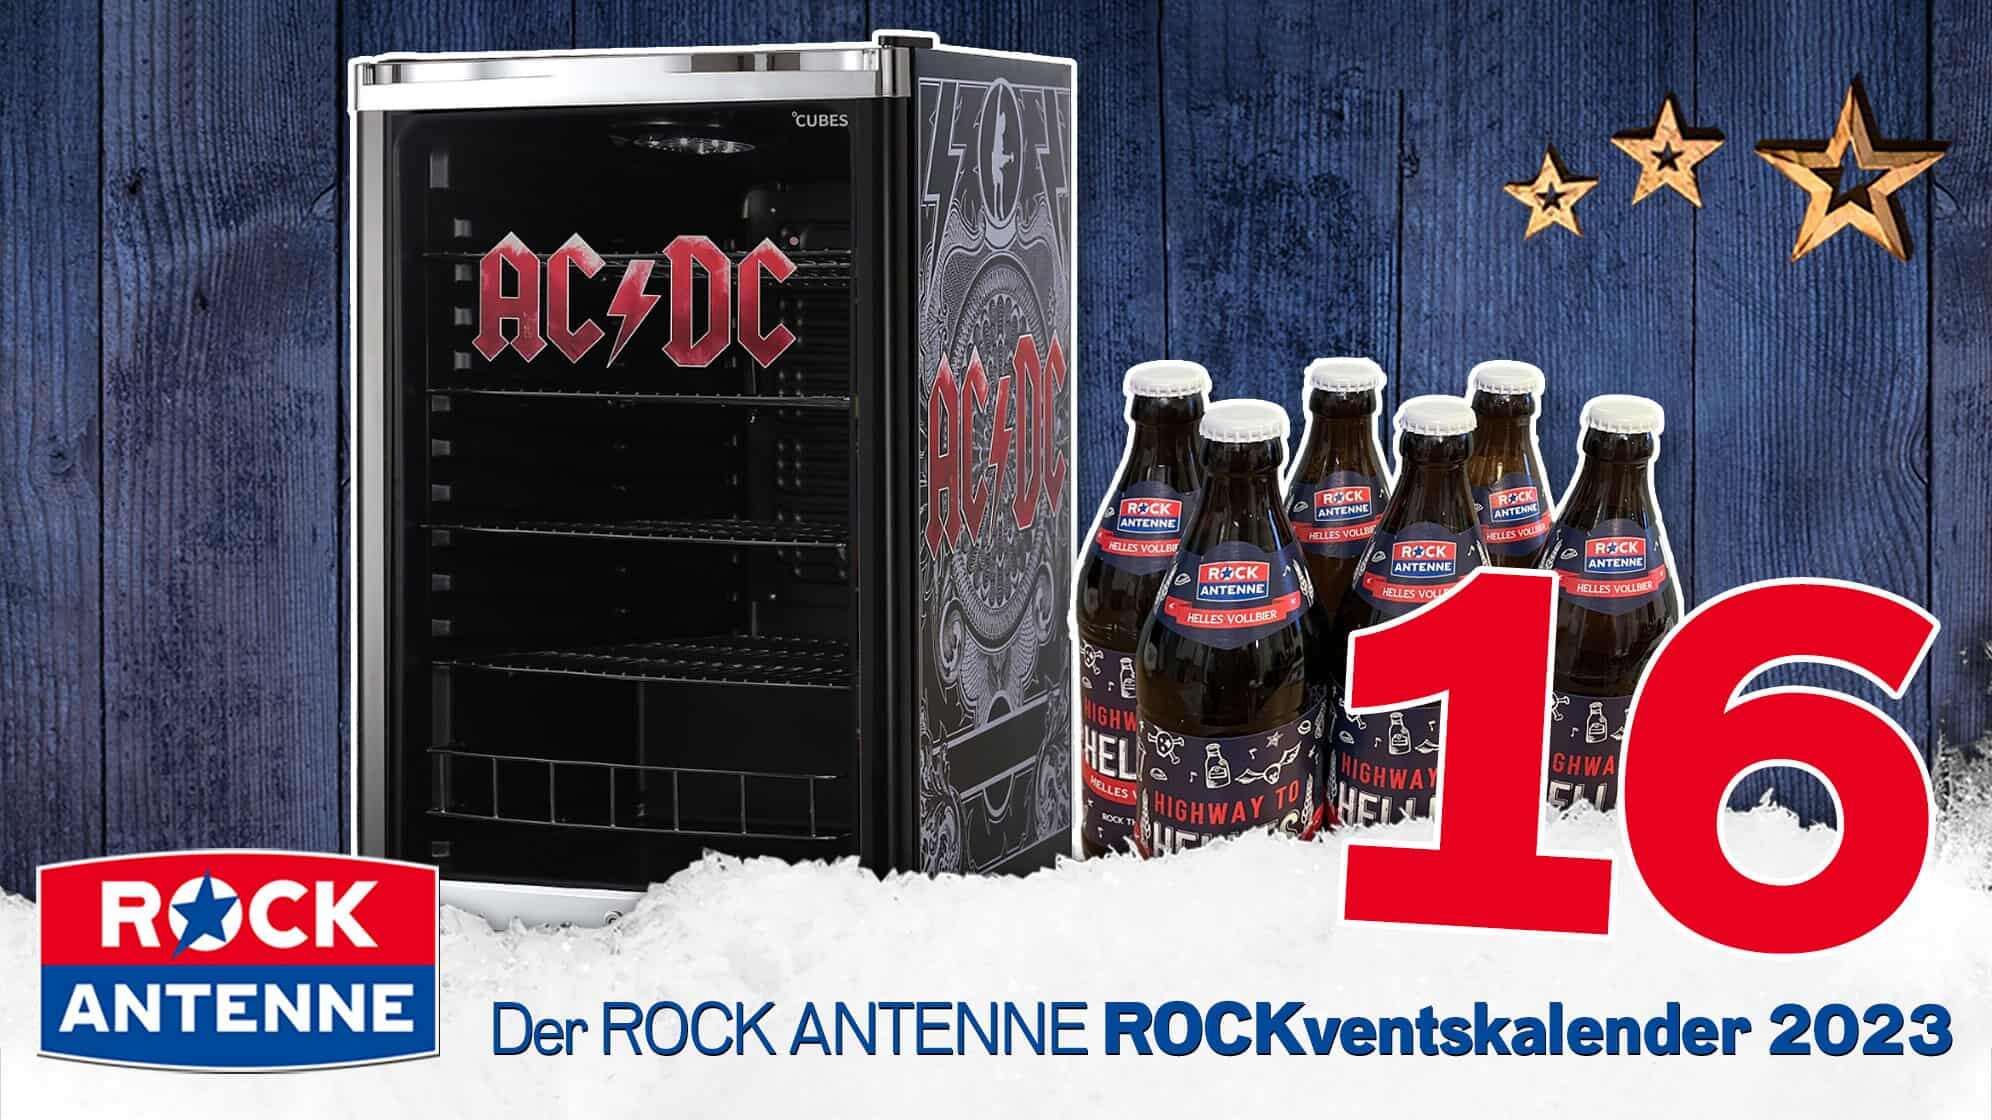 ROCK ANTENNE ROCKventskalender Türchen 16: AC/DC Kühlschrank mit ROCK ANTENNE Bier